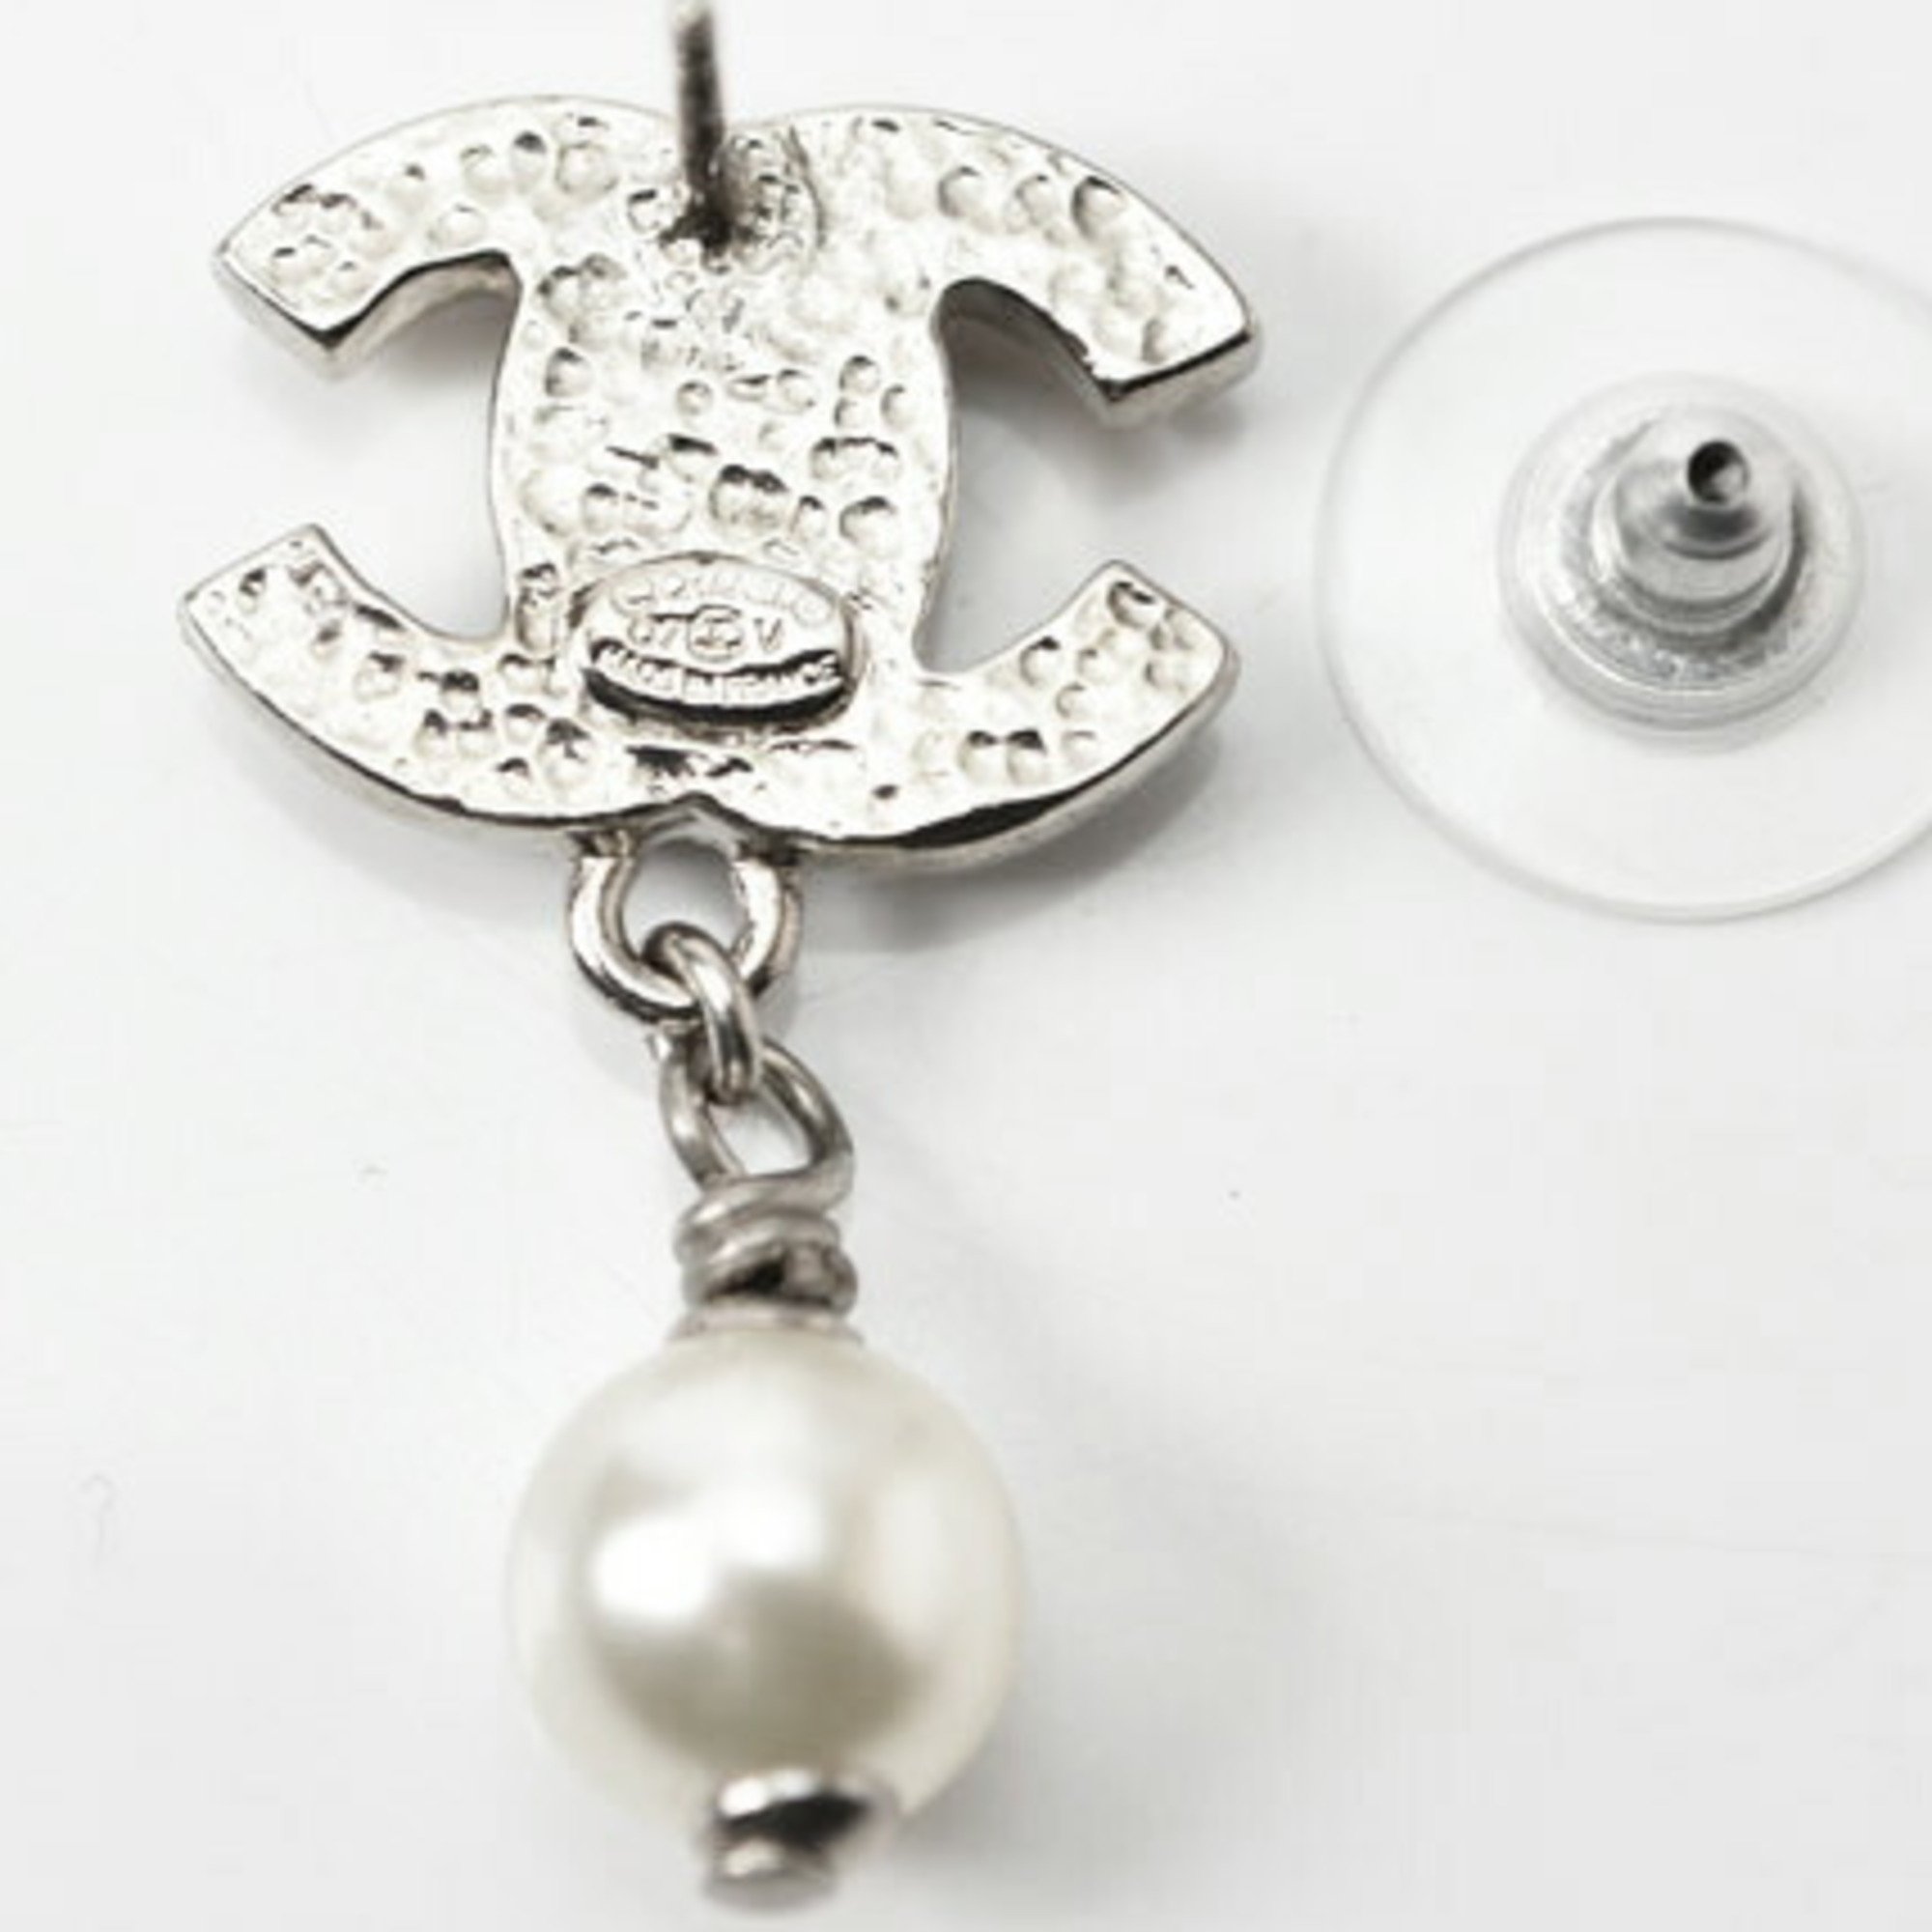 CHANEL earrings CC motif here mark swing pearl silver white